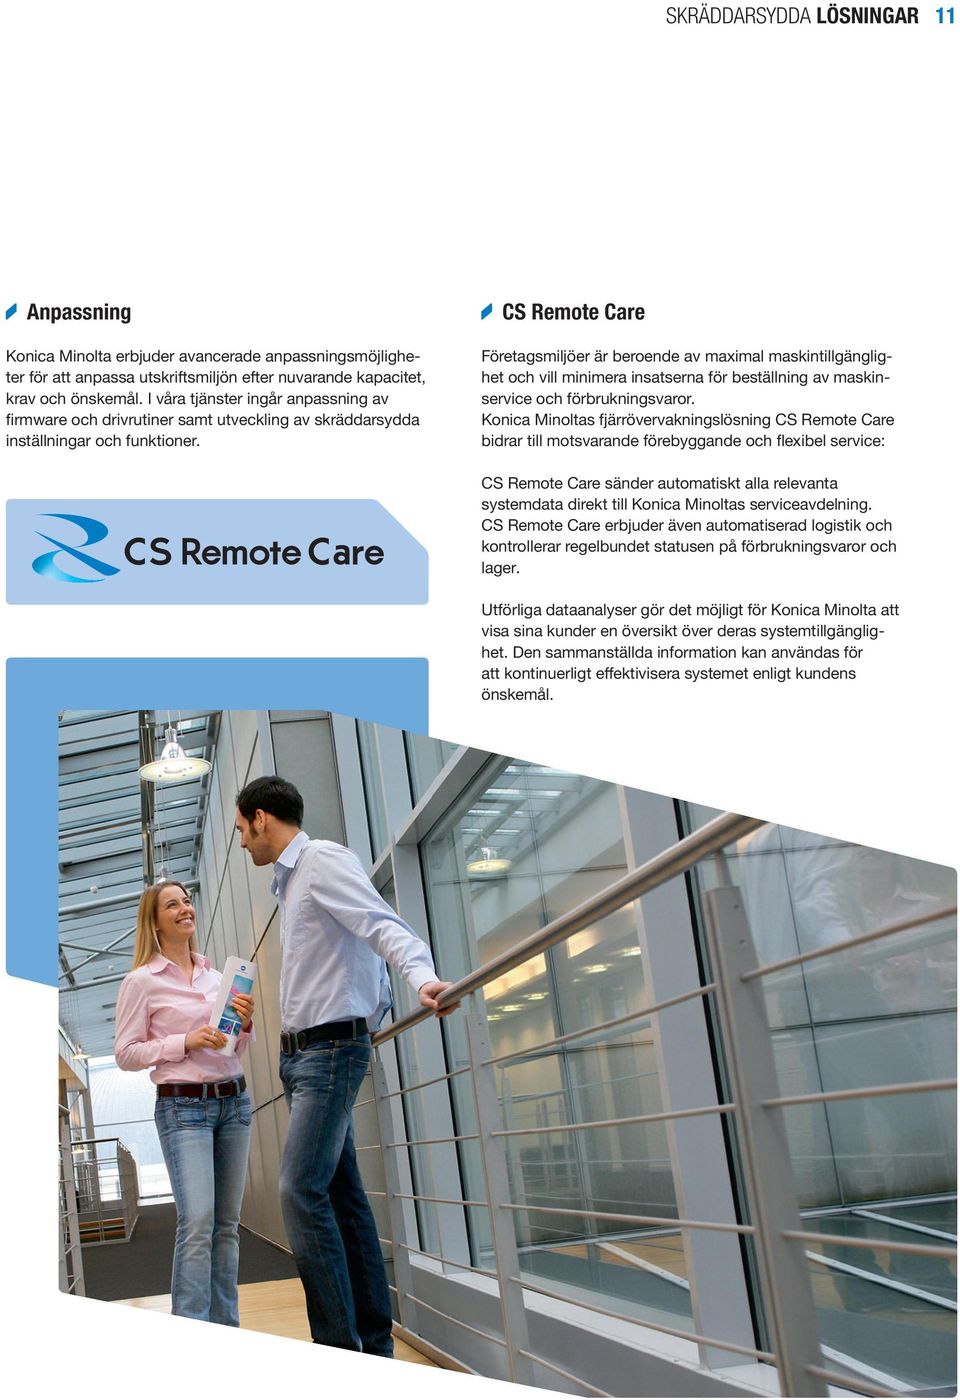 CS Remote Care Företagsmiljöer är beroende av maximal maskintillgänglighet och vill minimera insatserna för beställning av maskinservice och förbrukningsvaror.